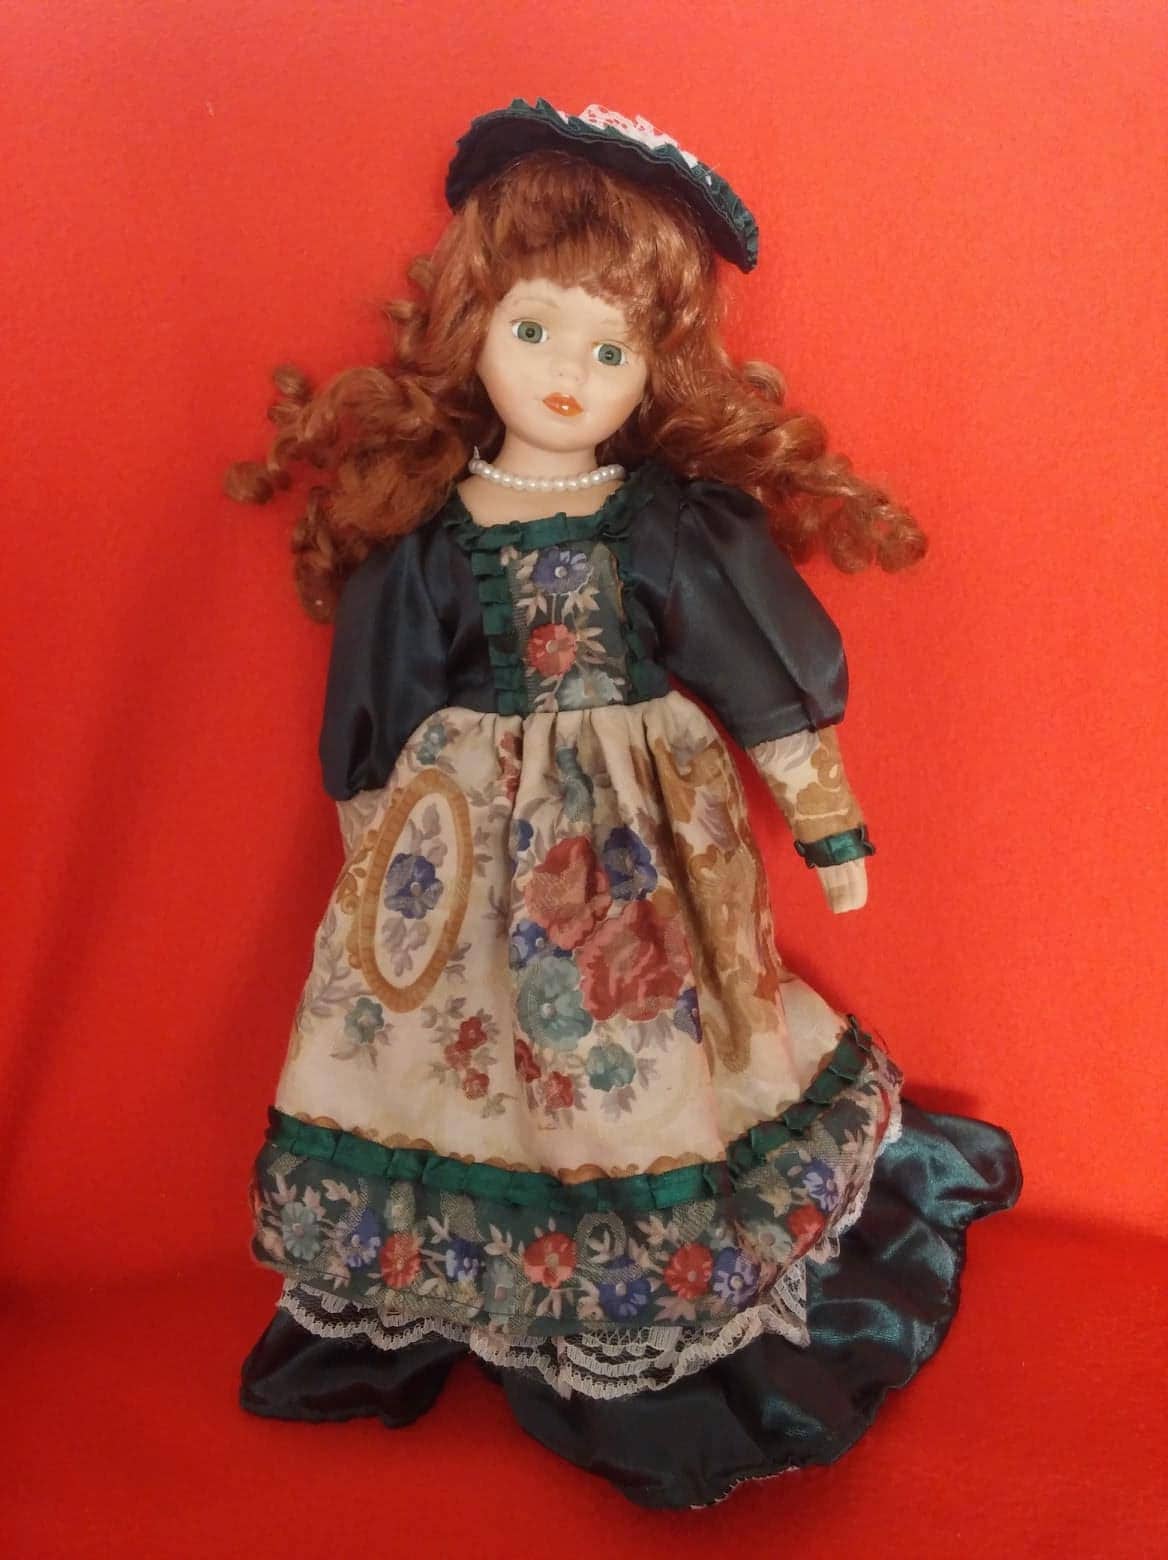 Vintage Porcelain Doll 70s or 80s, Curly Ginger Hair, Satin Hat 